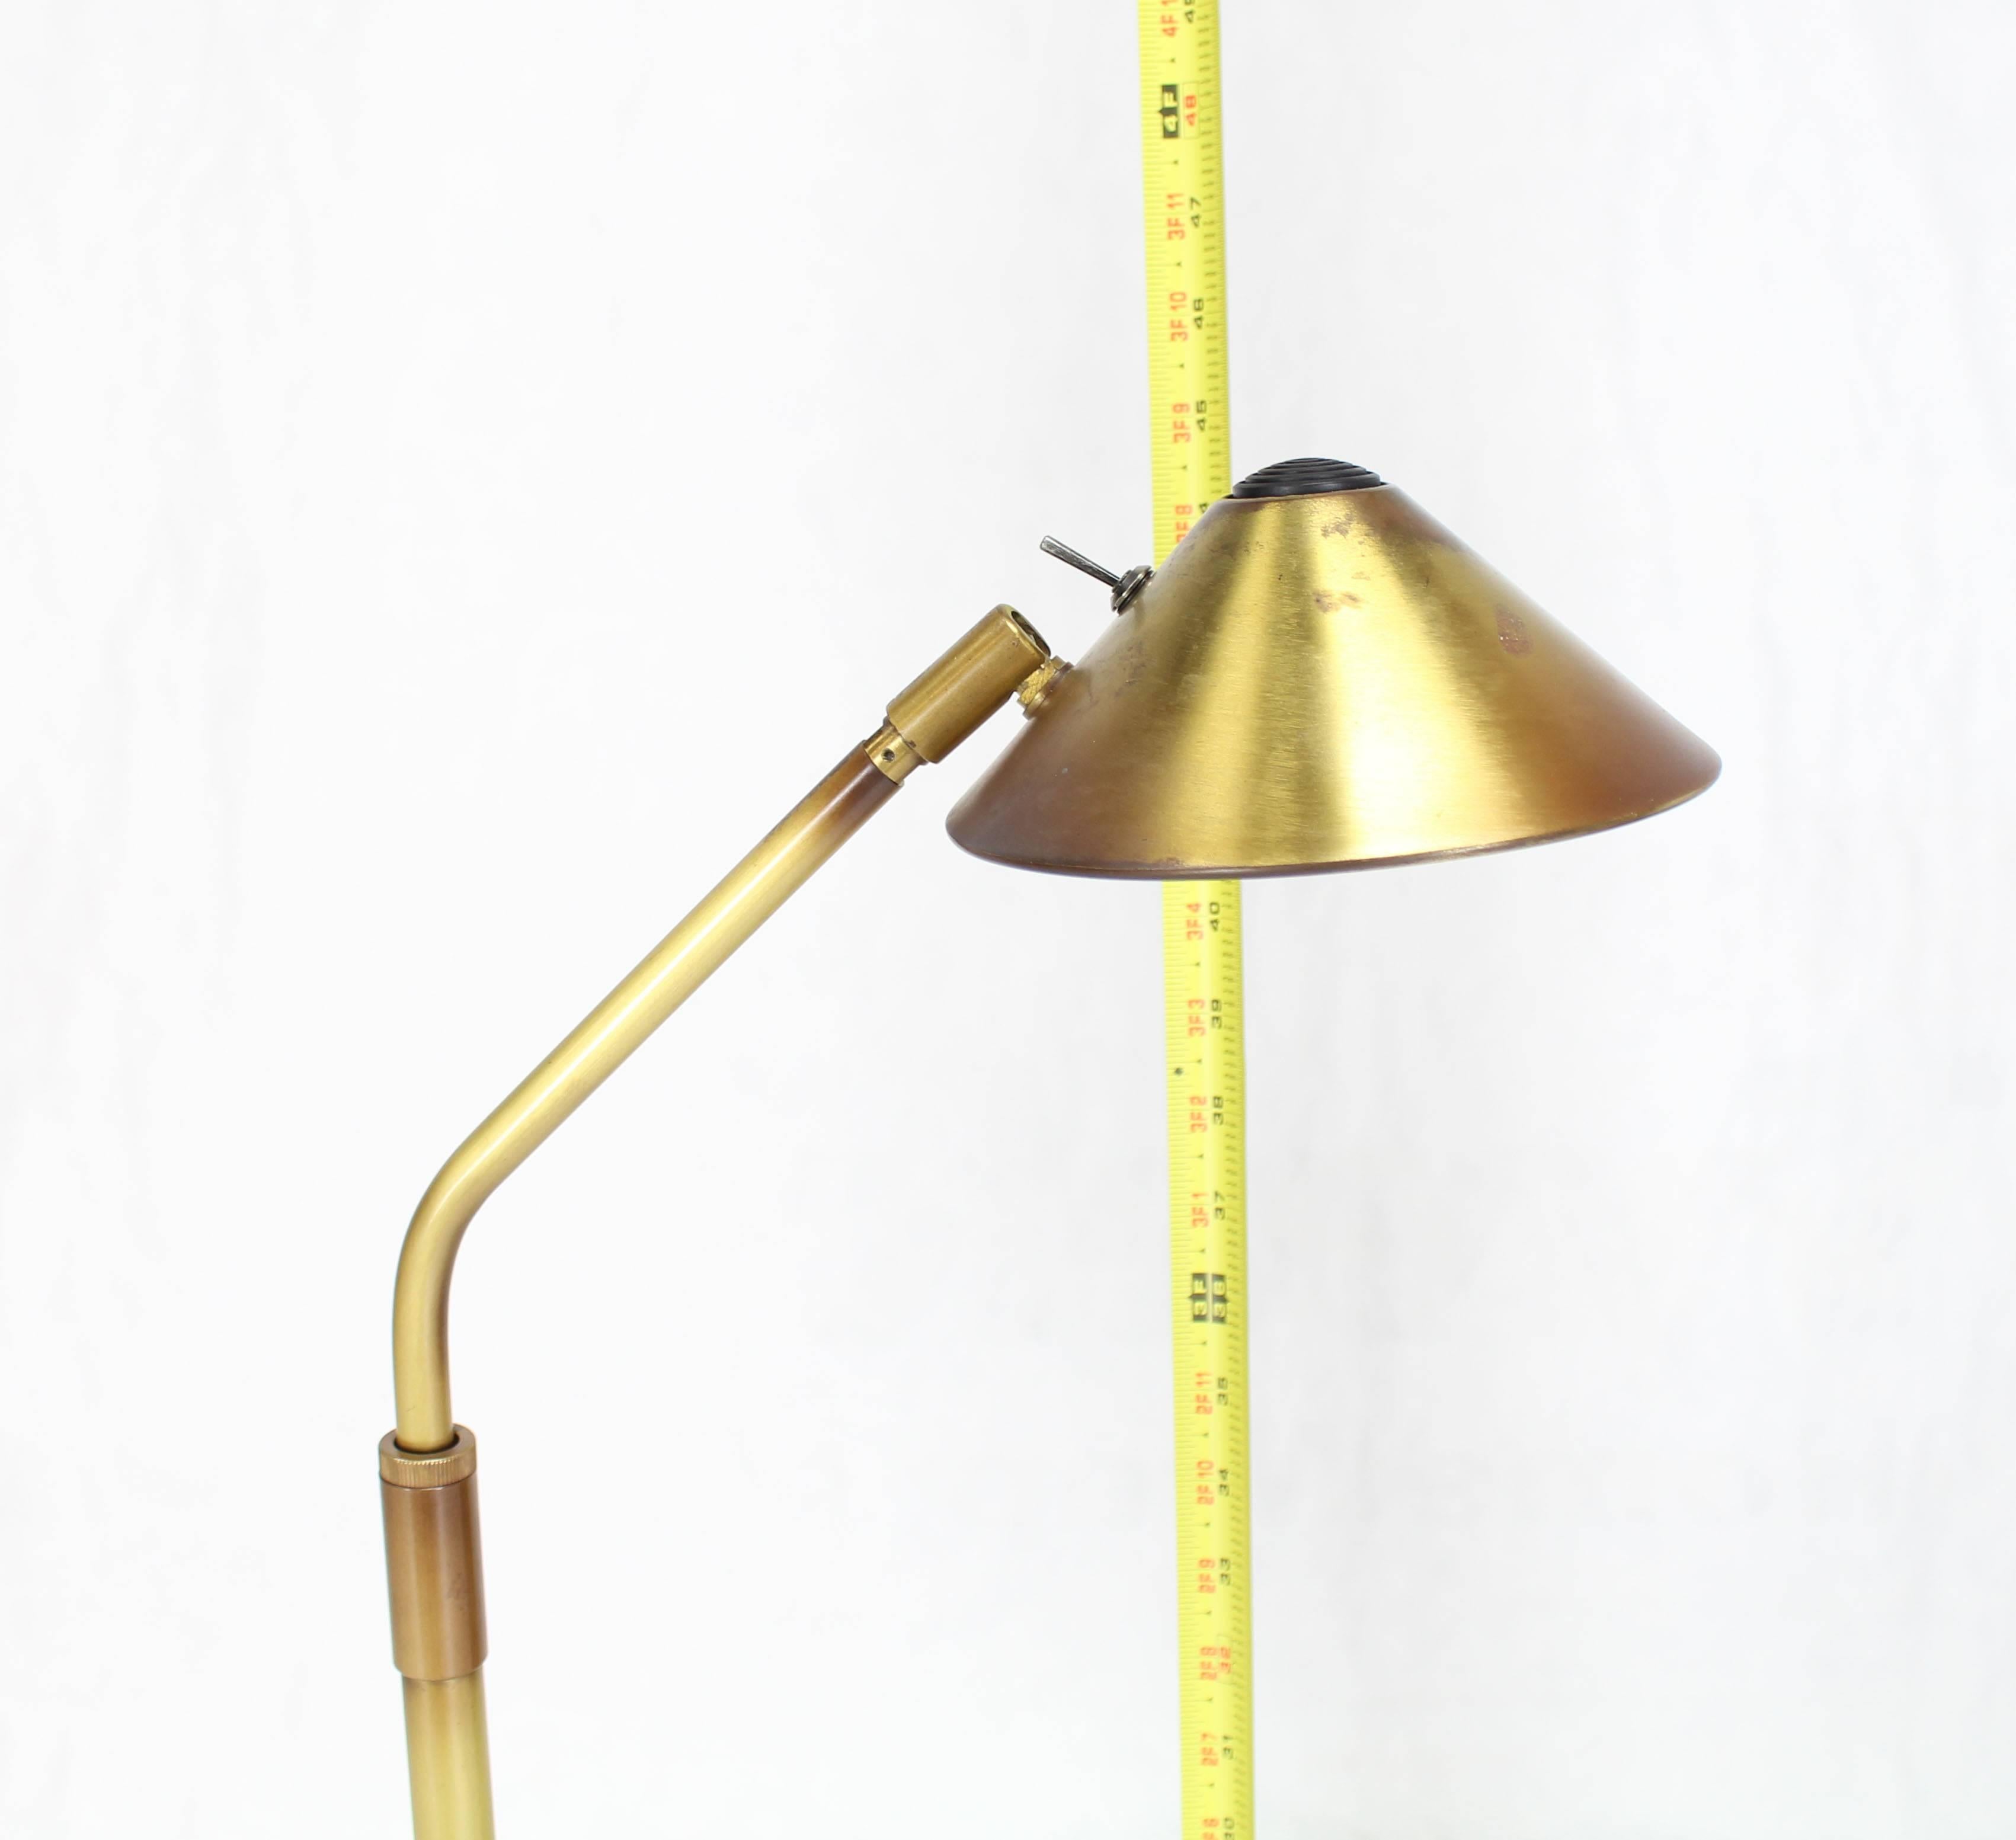 Covacs verstellbare Mid-Century Modern Stehlampe aus Messing. Maße: Einstellbare Höhe 45-62